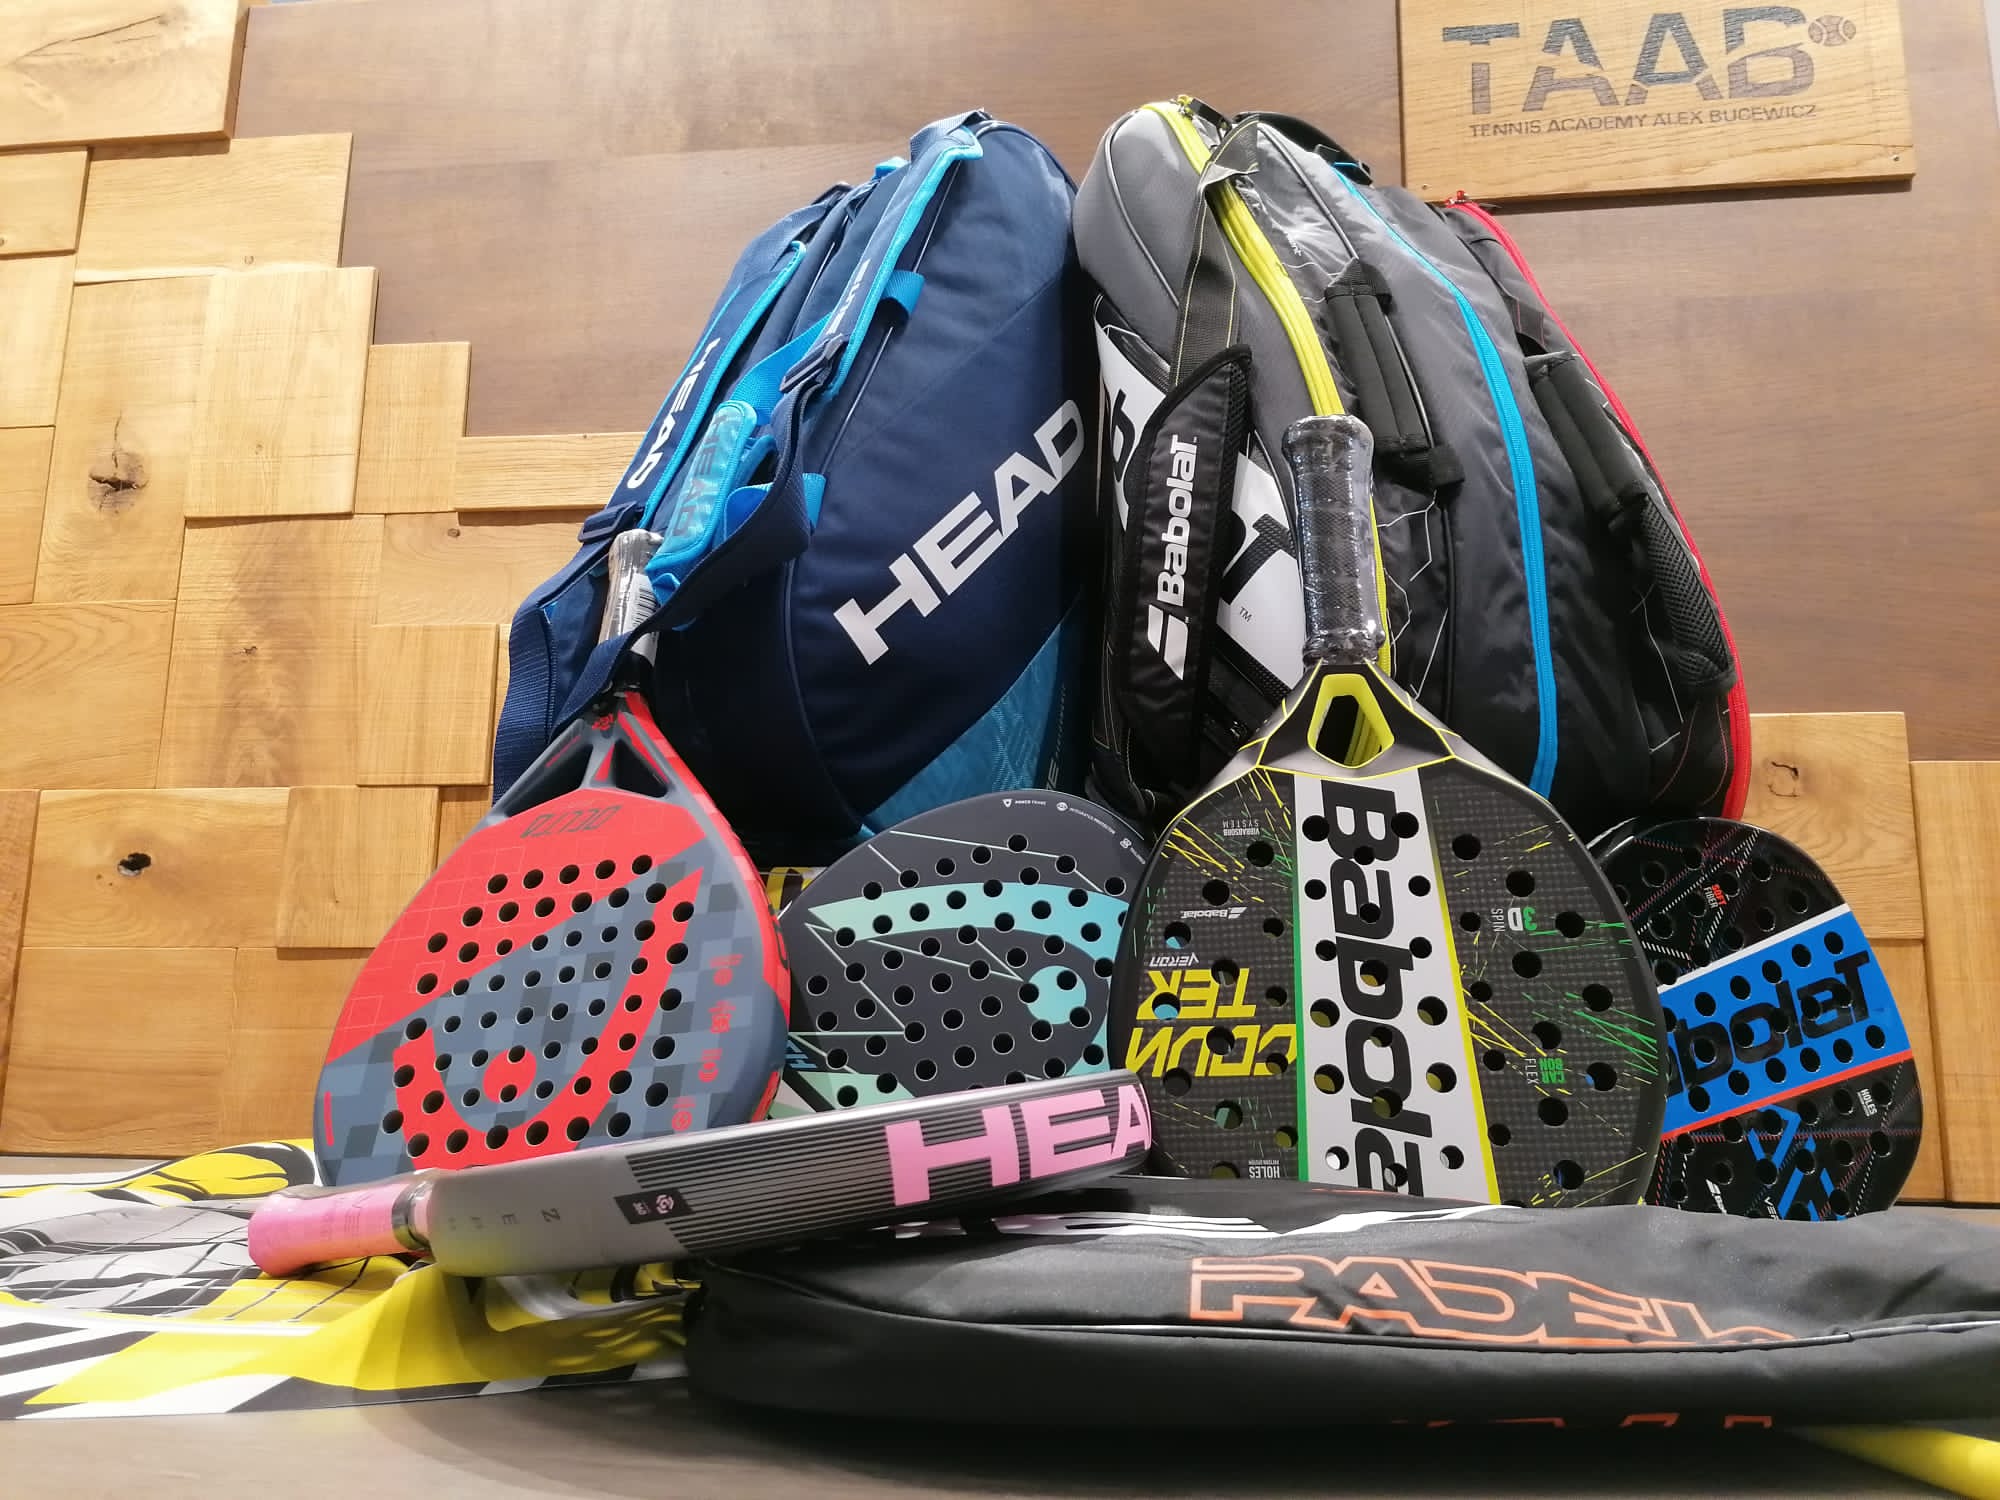 Auf dem Bild sieht man Padel Tennis Equipment: verschiedene Schläger und Taschen